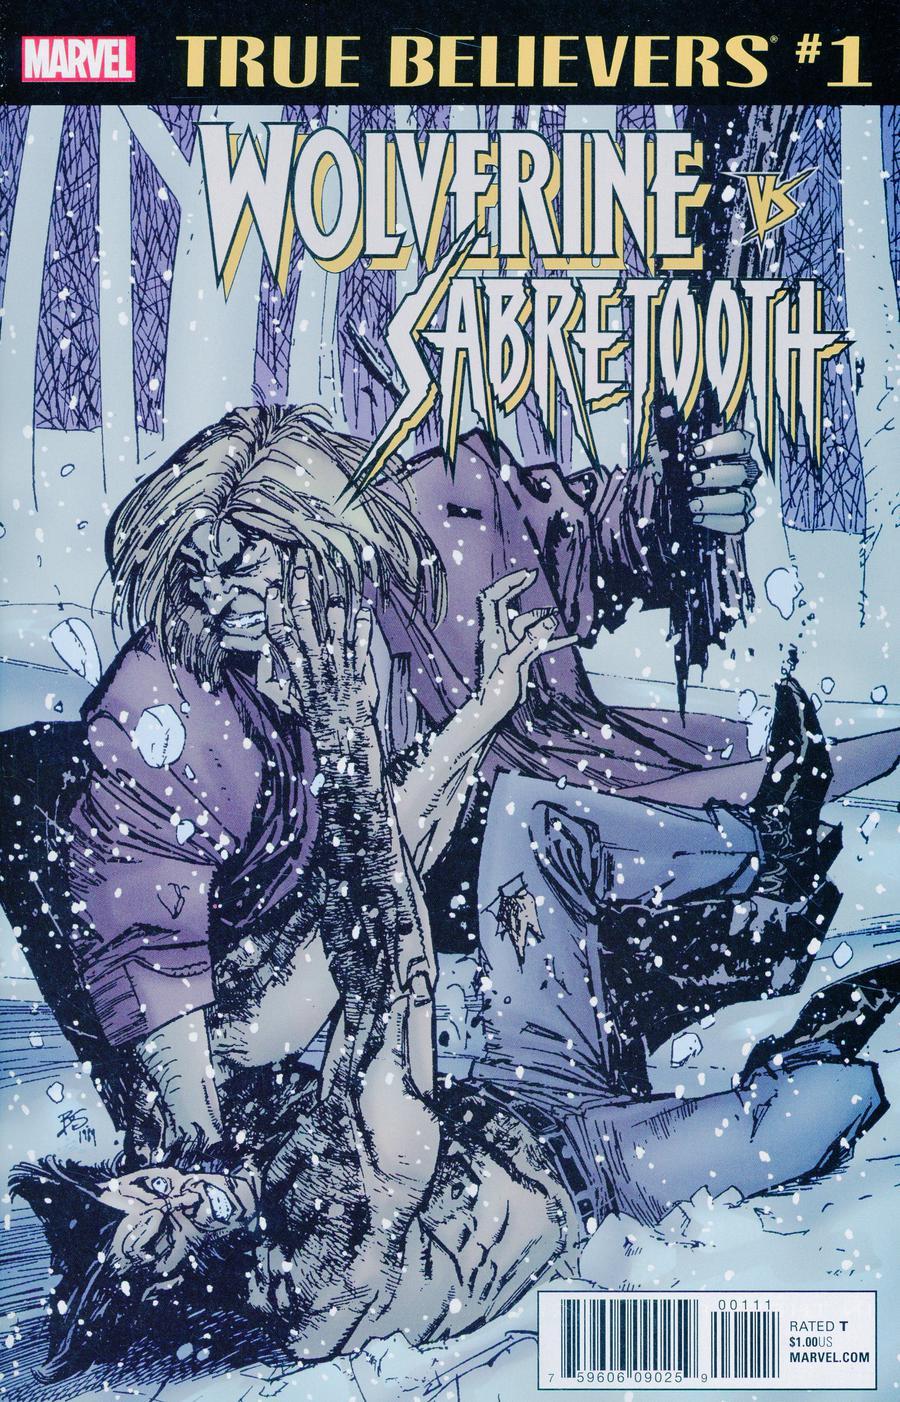 True Believers Wolverine vs Sabretooth Vol. 1 #1